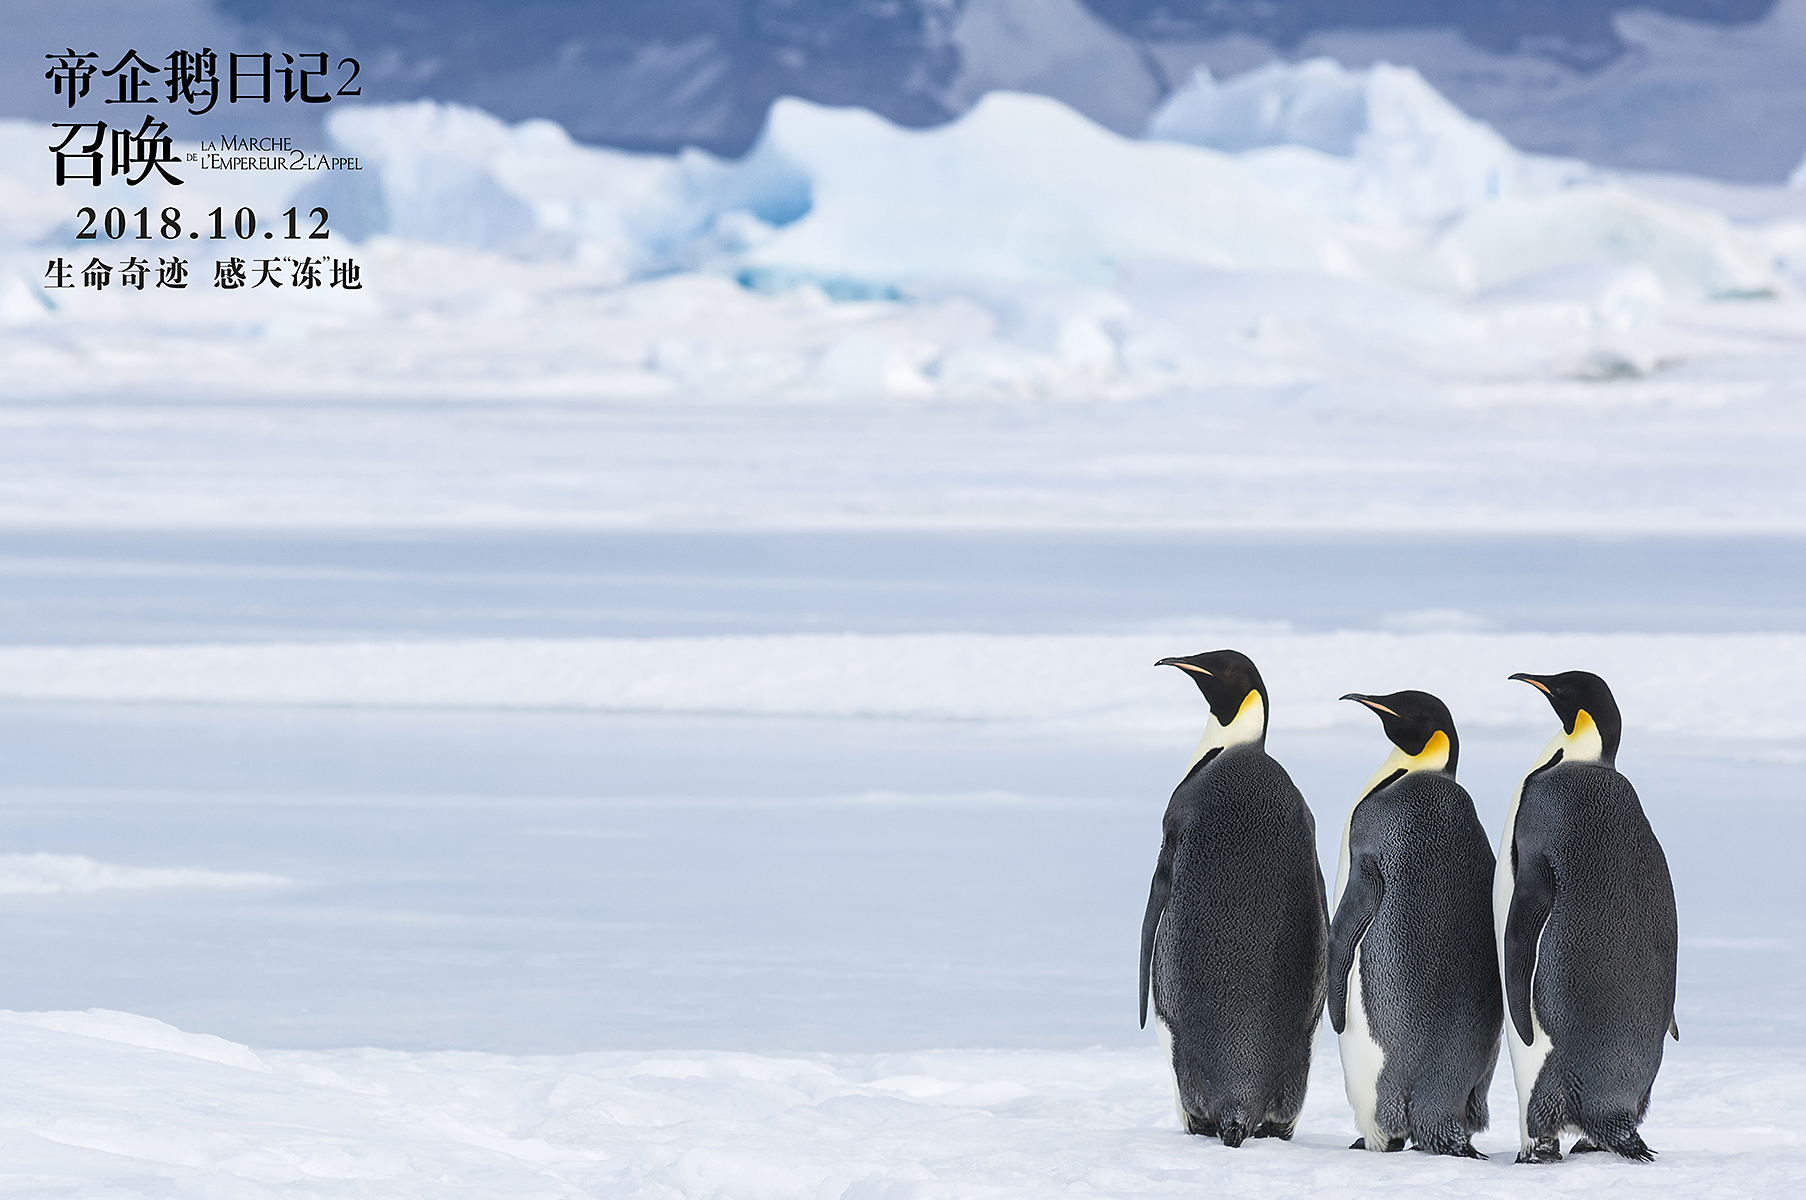 《帝企鹅日记2:召唤》承接了第一部,围绕一群在南极极端天气中勇敢